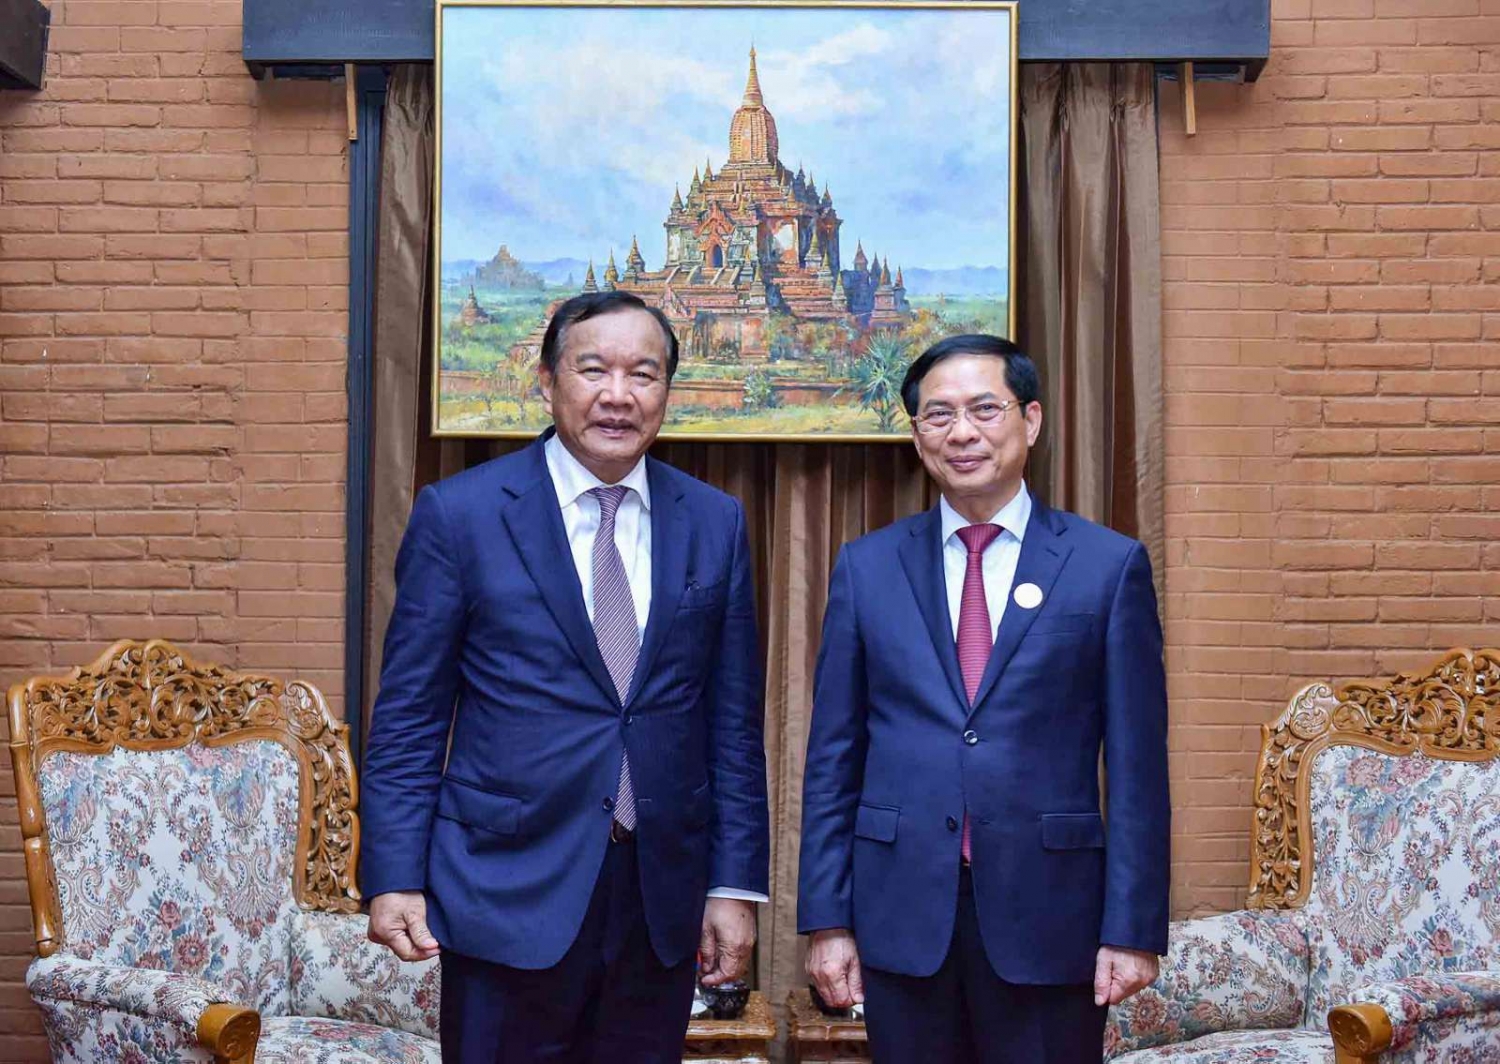 Hoạt động song phương của Bộ trưởng Bùi Thanh Sơn tại Hội nghị Bộ trưởng Ngoại giao Hợp tác Mekong - Lan Thương lần thứ 7